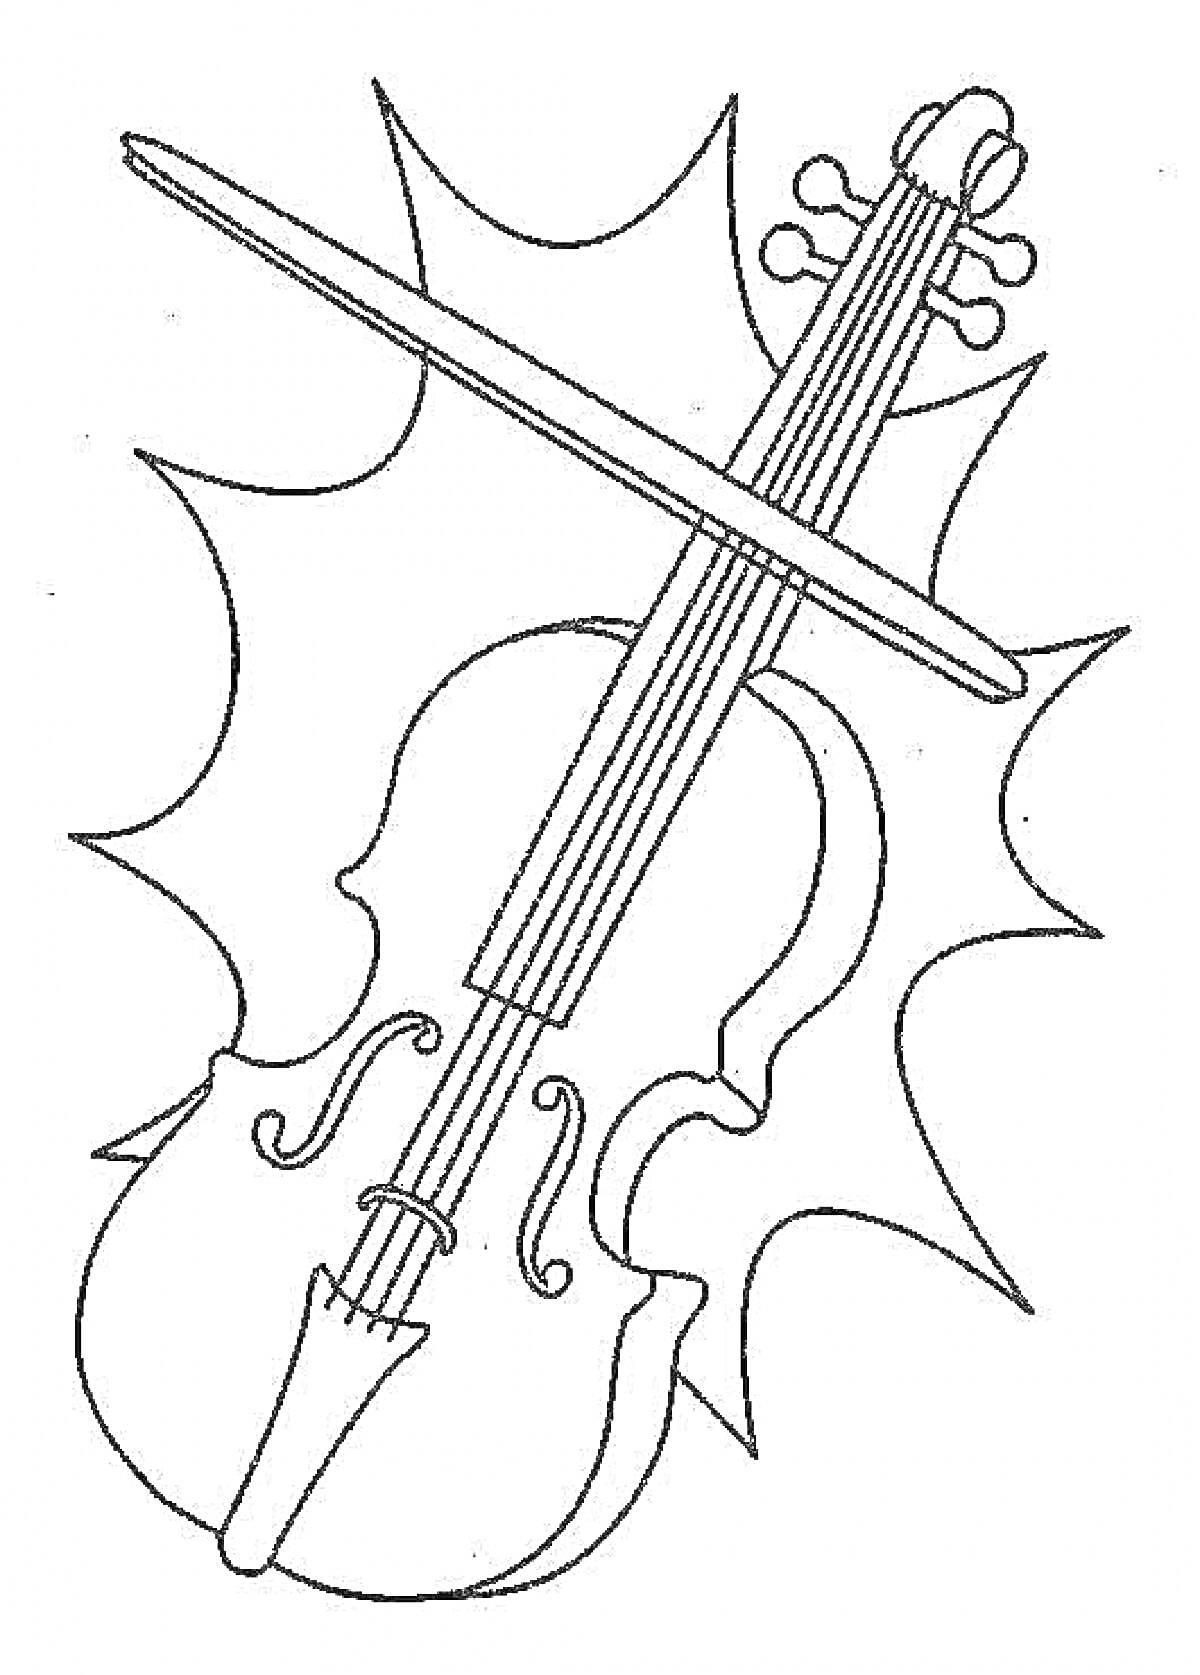 Скрипка и смычок на фоне абстрактного рисунка